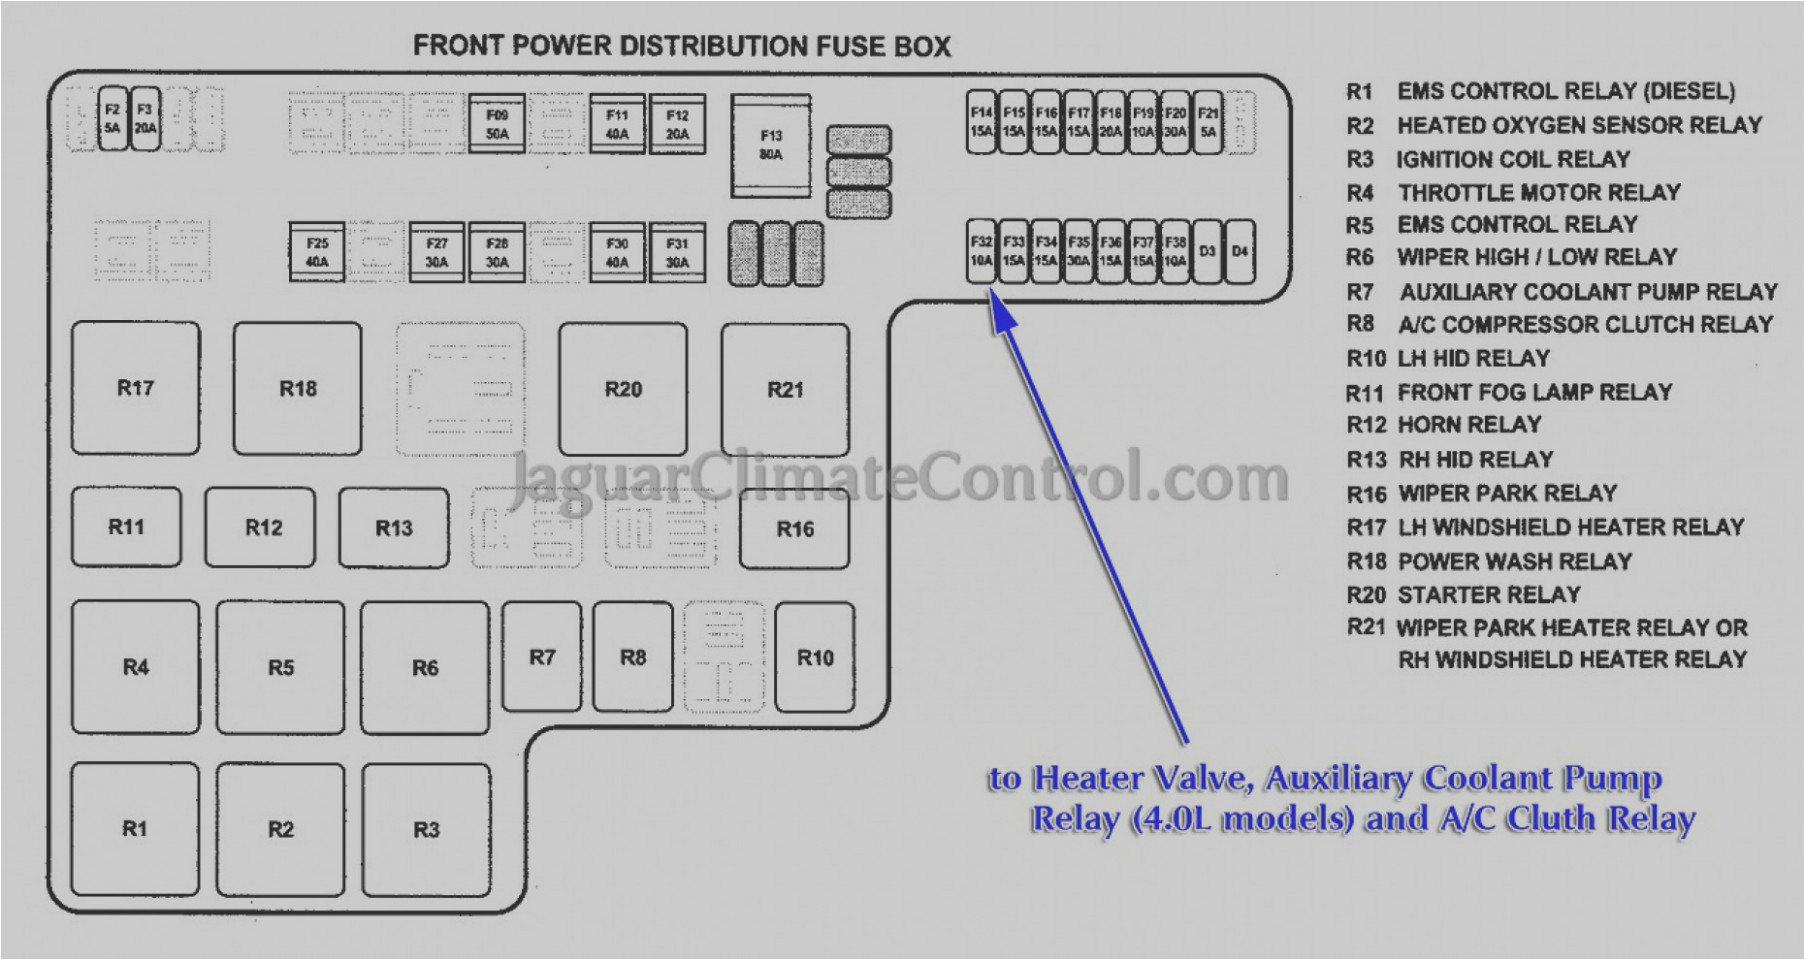 13 jaguar fuse diagram electrical wiring diagram 2002 jaguar s type 3 0 fuse box diagram jpg